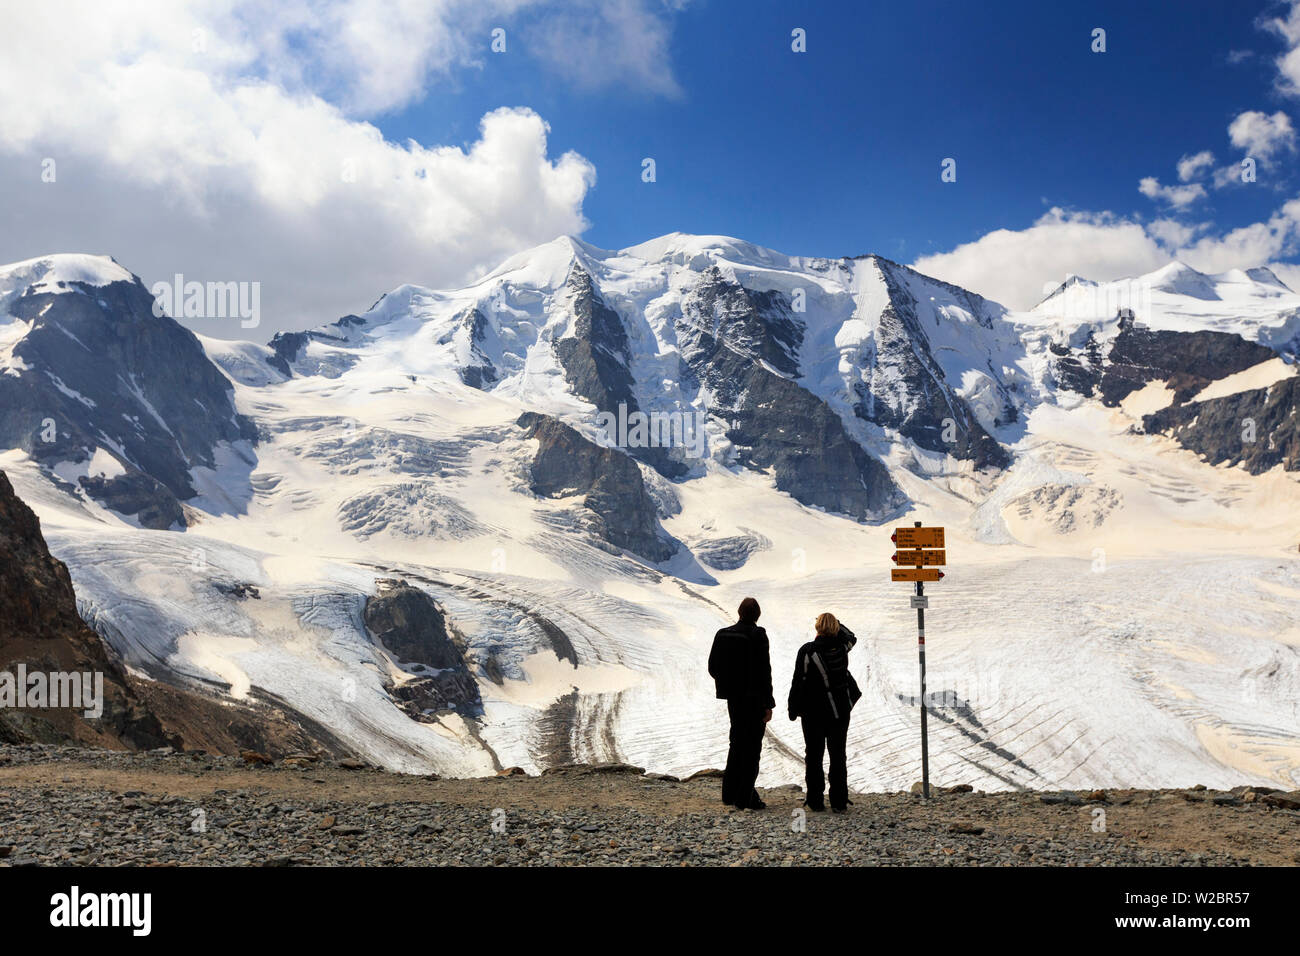 La Suisse, Grisons, Haute-engadine, Saint Moritz, Diavolezza (2978m), vue sur la montagne, les glaciers et le Piz Bernina (4049m) Banque D'Images